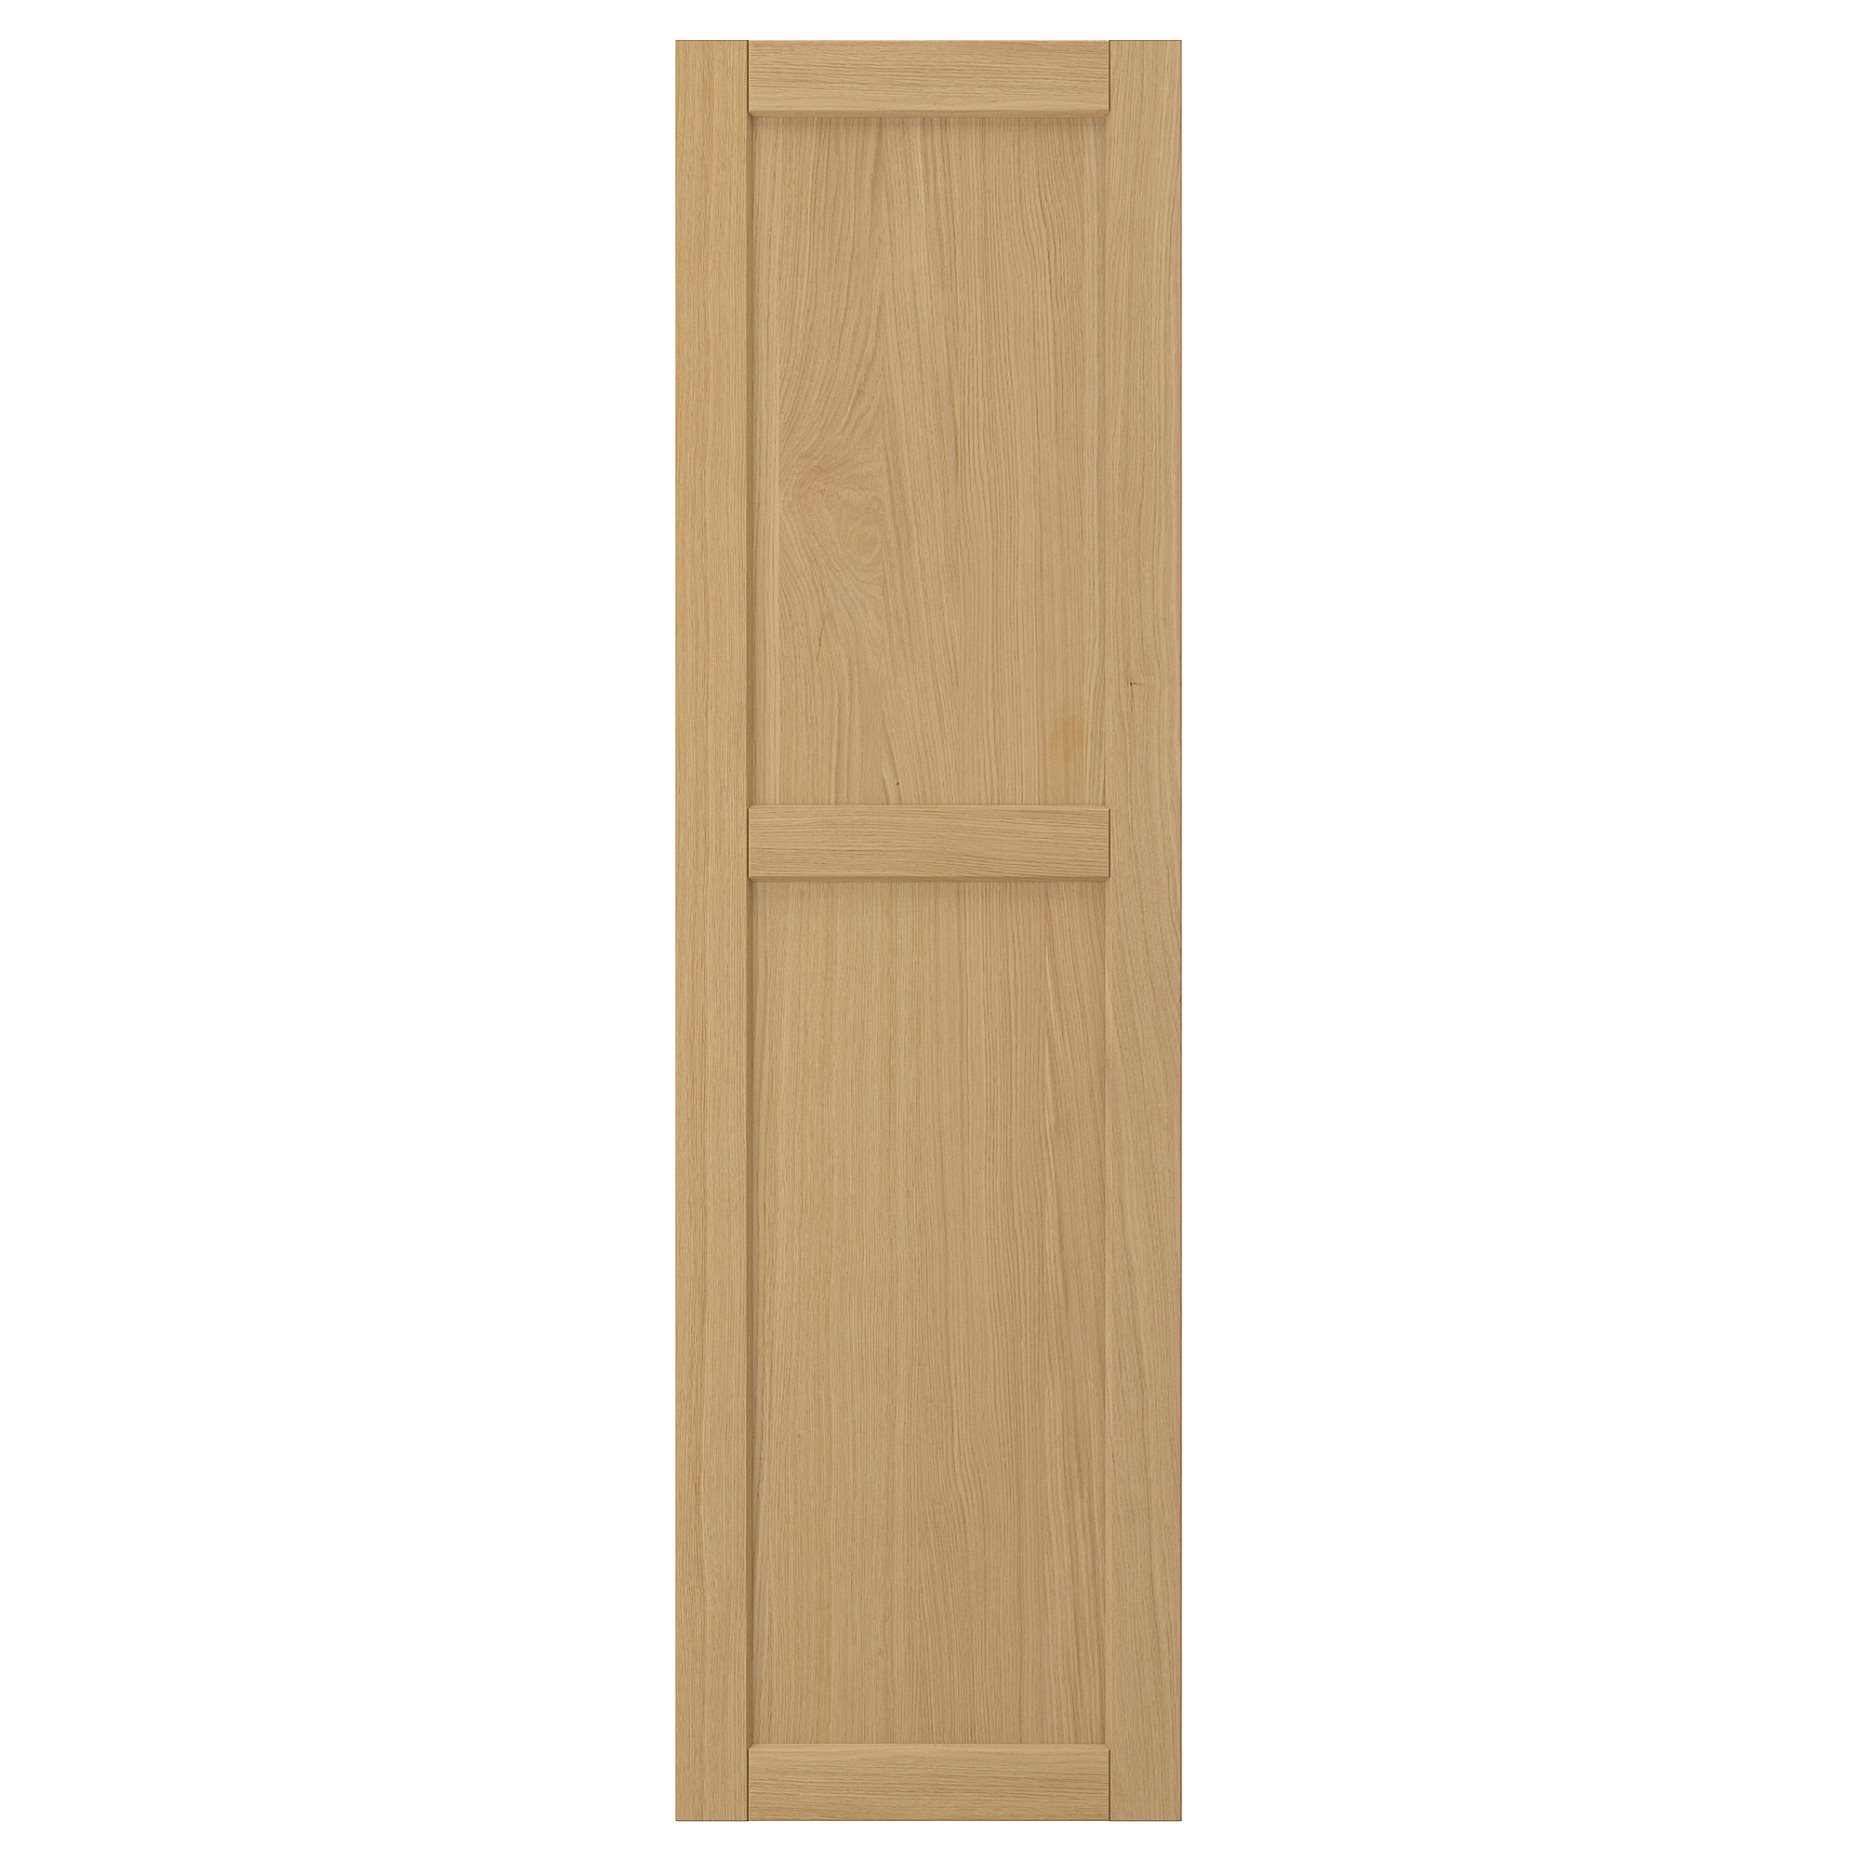 FORSBACKA, door, 40x140 cm, 005.652.30